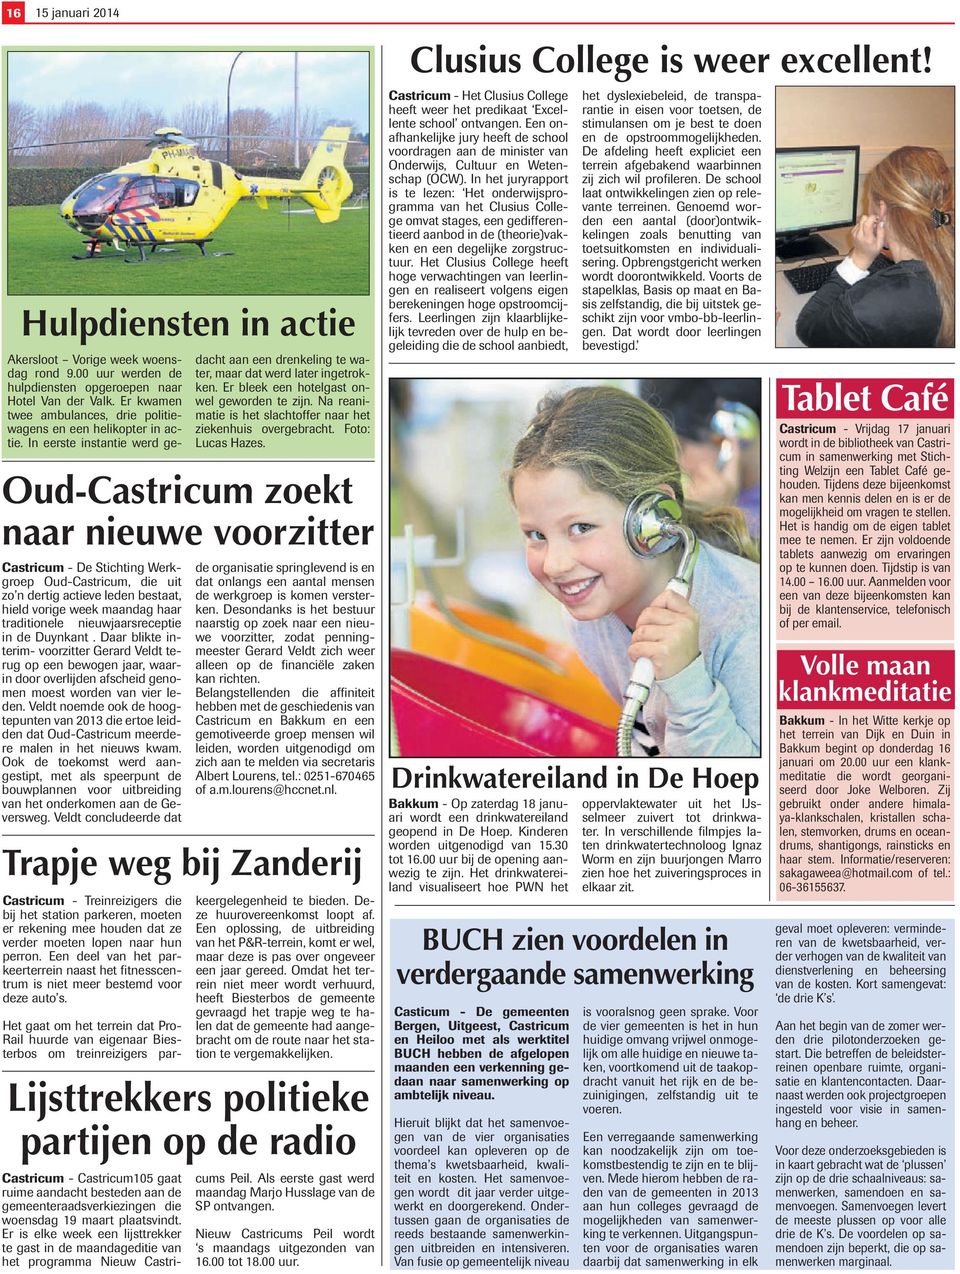 Veldt noemde ook de hoogtepunten van 2013 die ertoe leidden dat Oud-Castricum meerdere malen in het nieuws kwam.